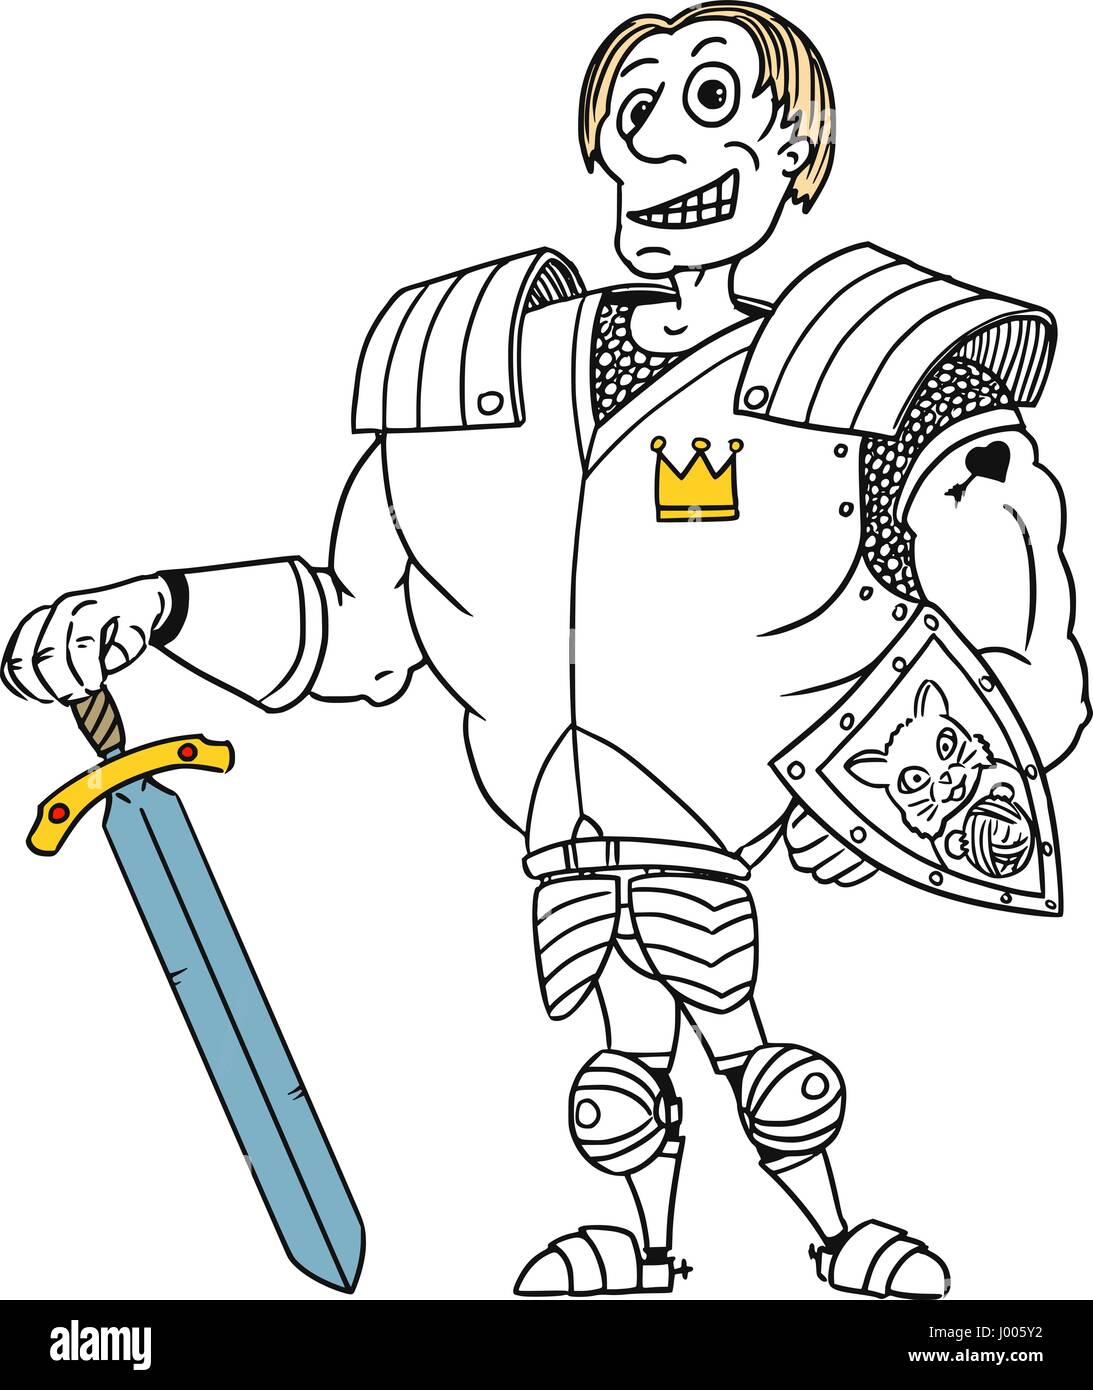 Cartoon Vektor alten Fantasy mittelalterliche königliche Prinz Charming Ritter-Helden mit Rüstung, Schwert, Schild und Lächeln Stock Vektor